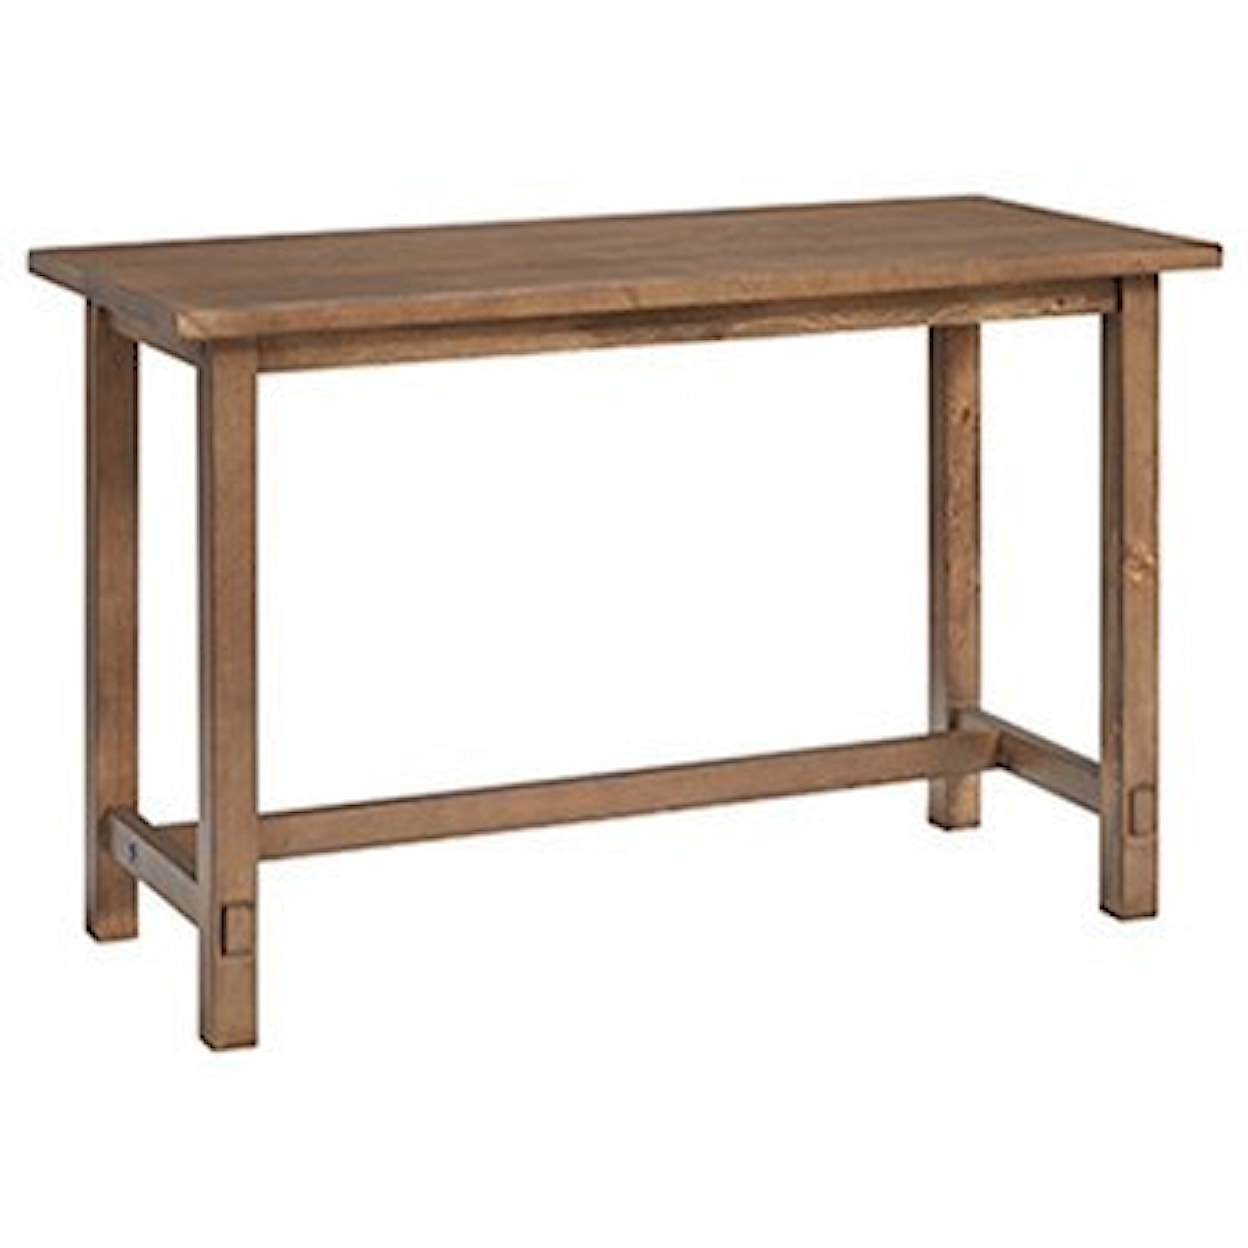 Progressive Furniture Mesa Table Desk